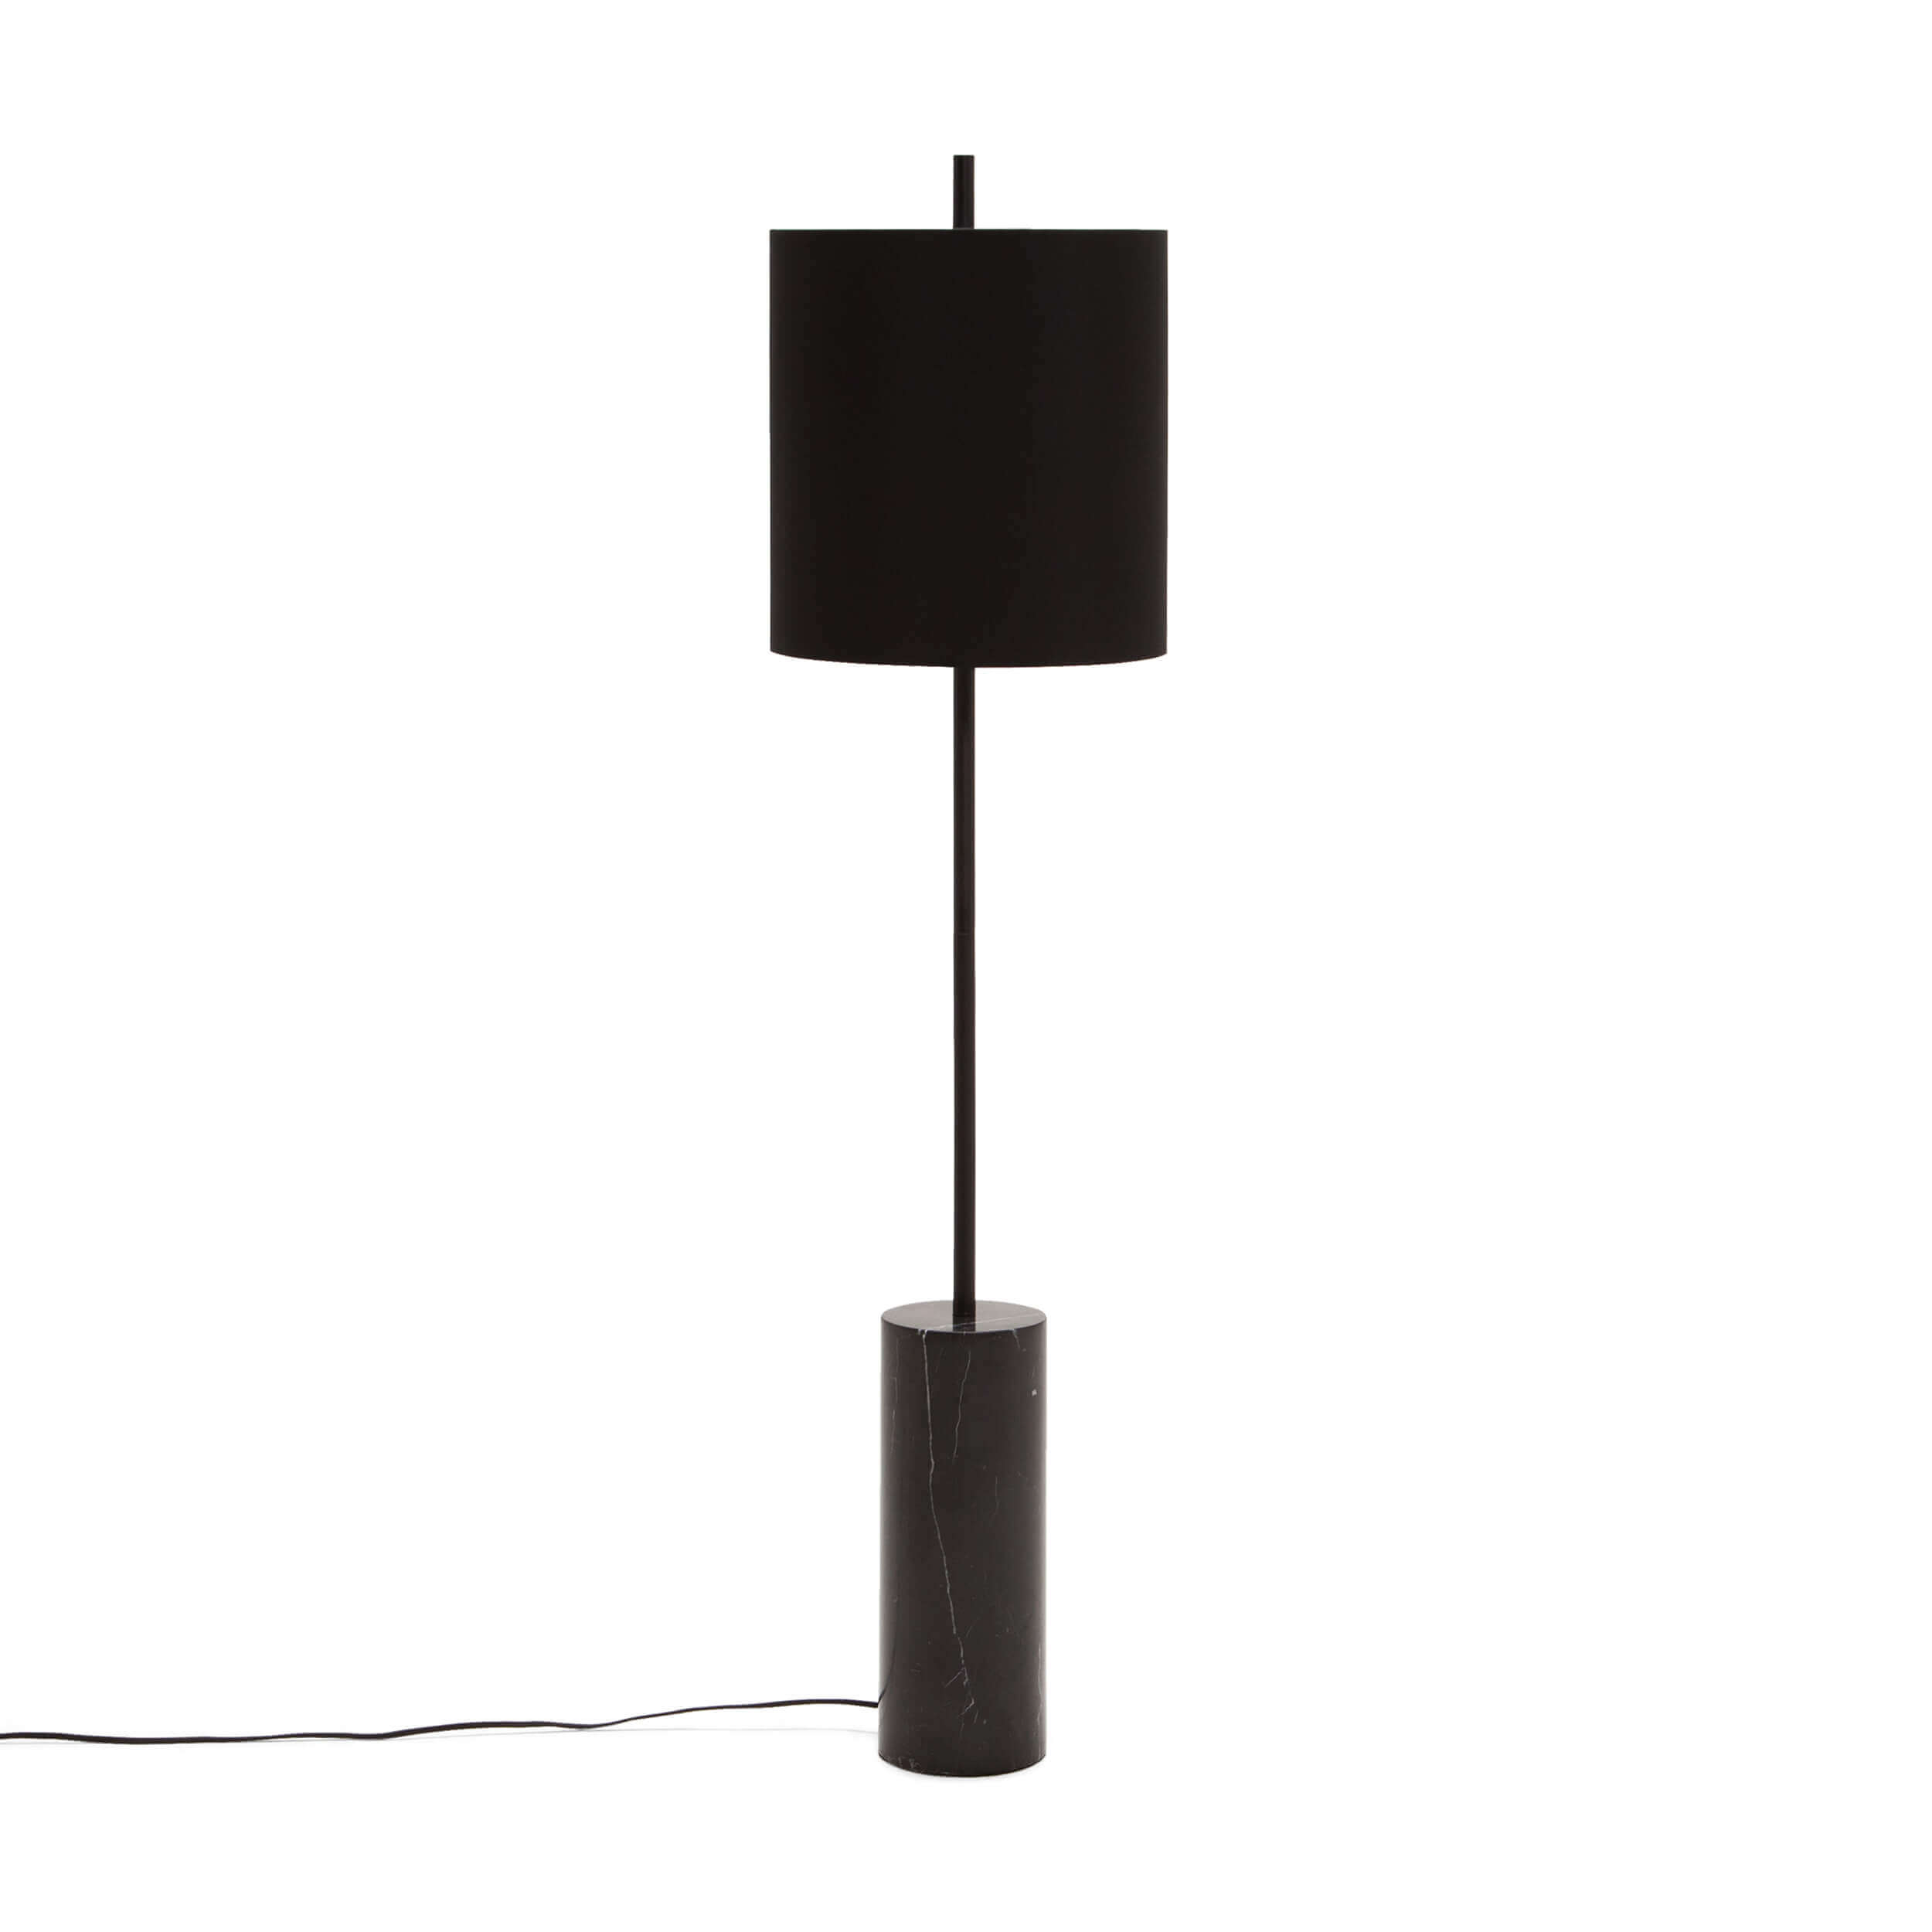 Drum Floor Lamp with regard to size 2500 X 2500